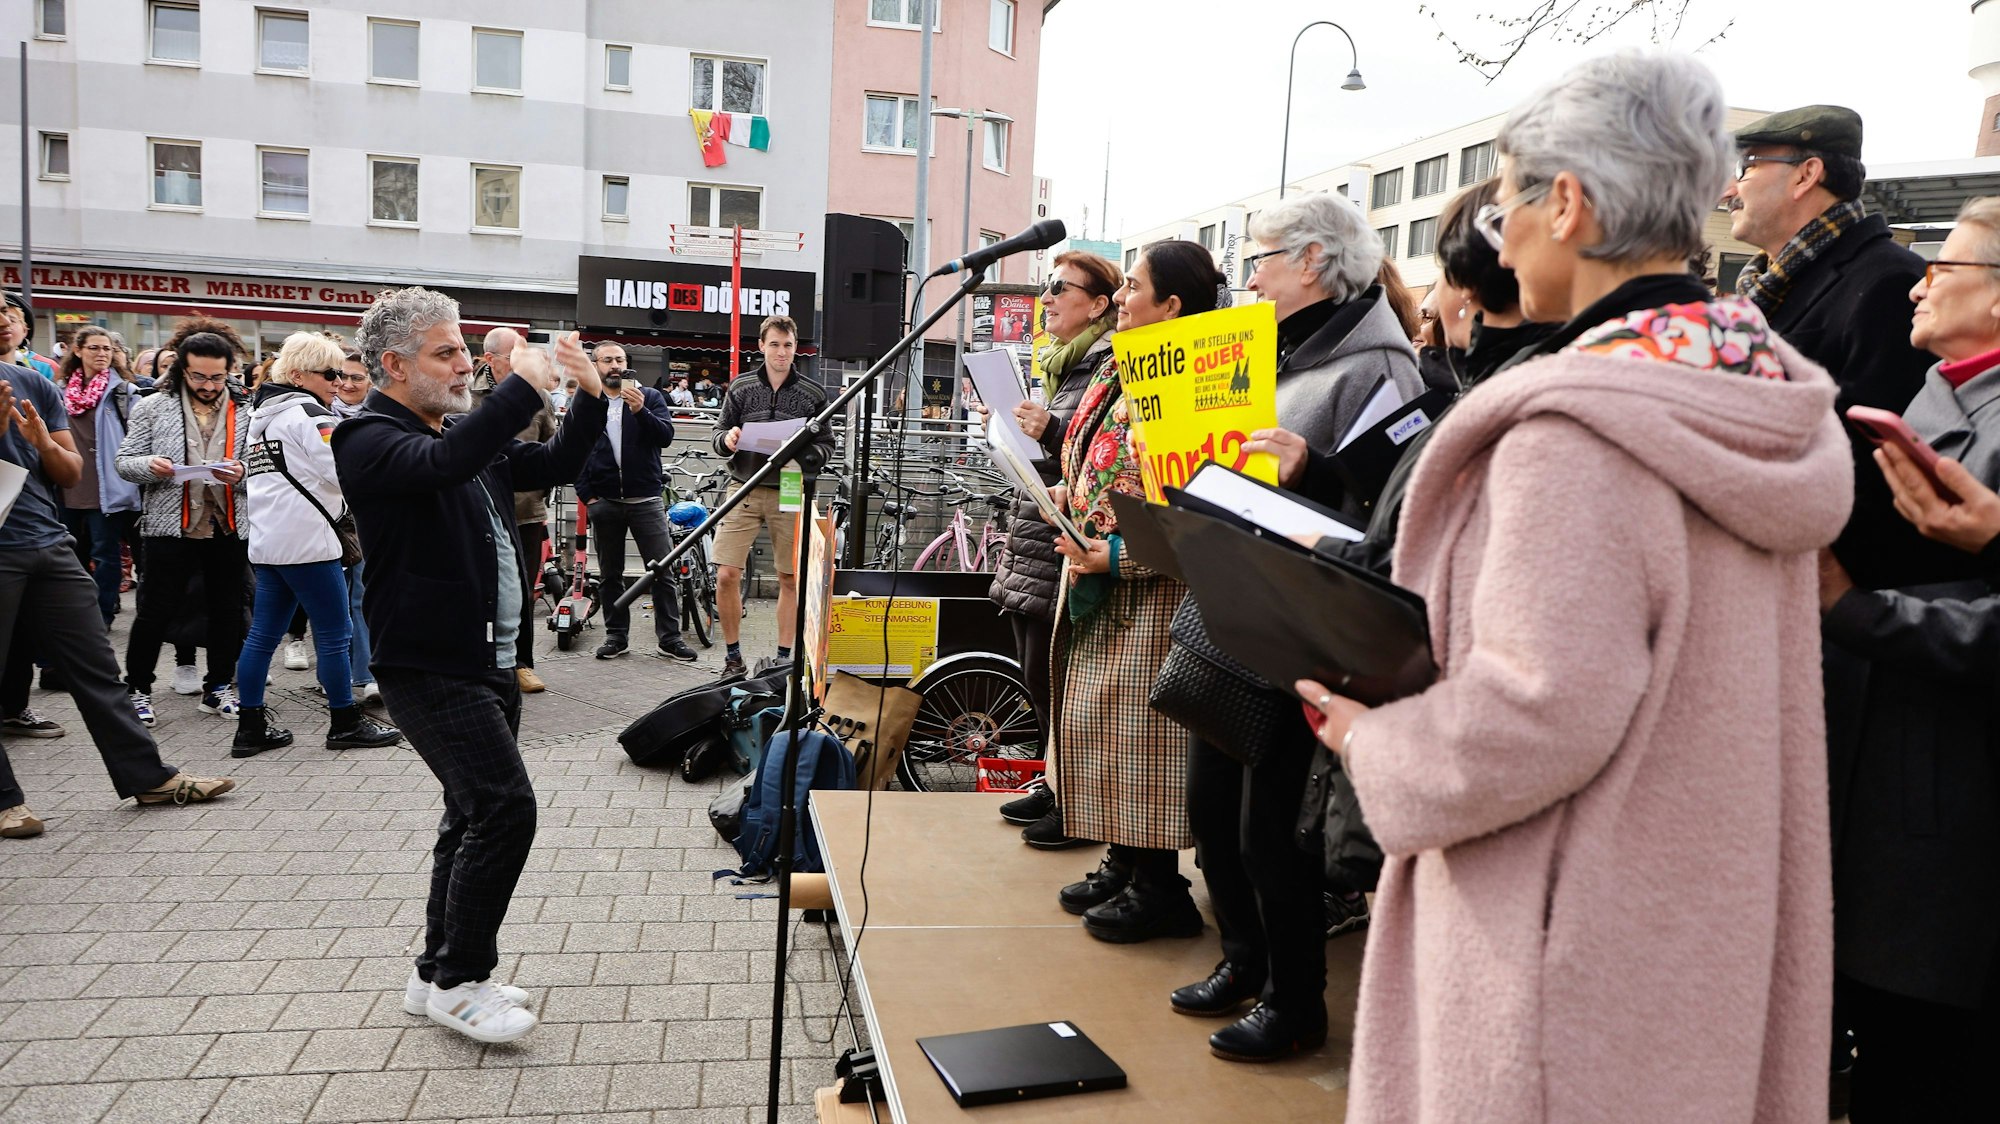 Menschen bei einer Demonstration stehen auf einer Bühne vor einem Mikrofon.